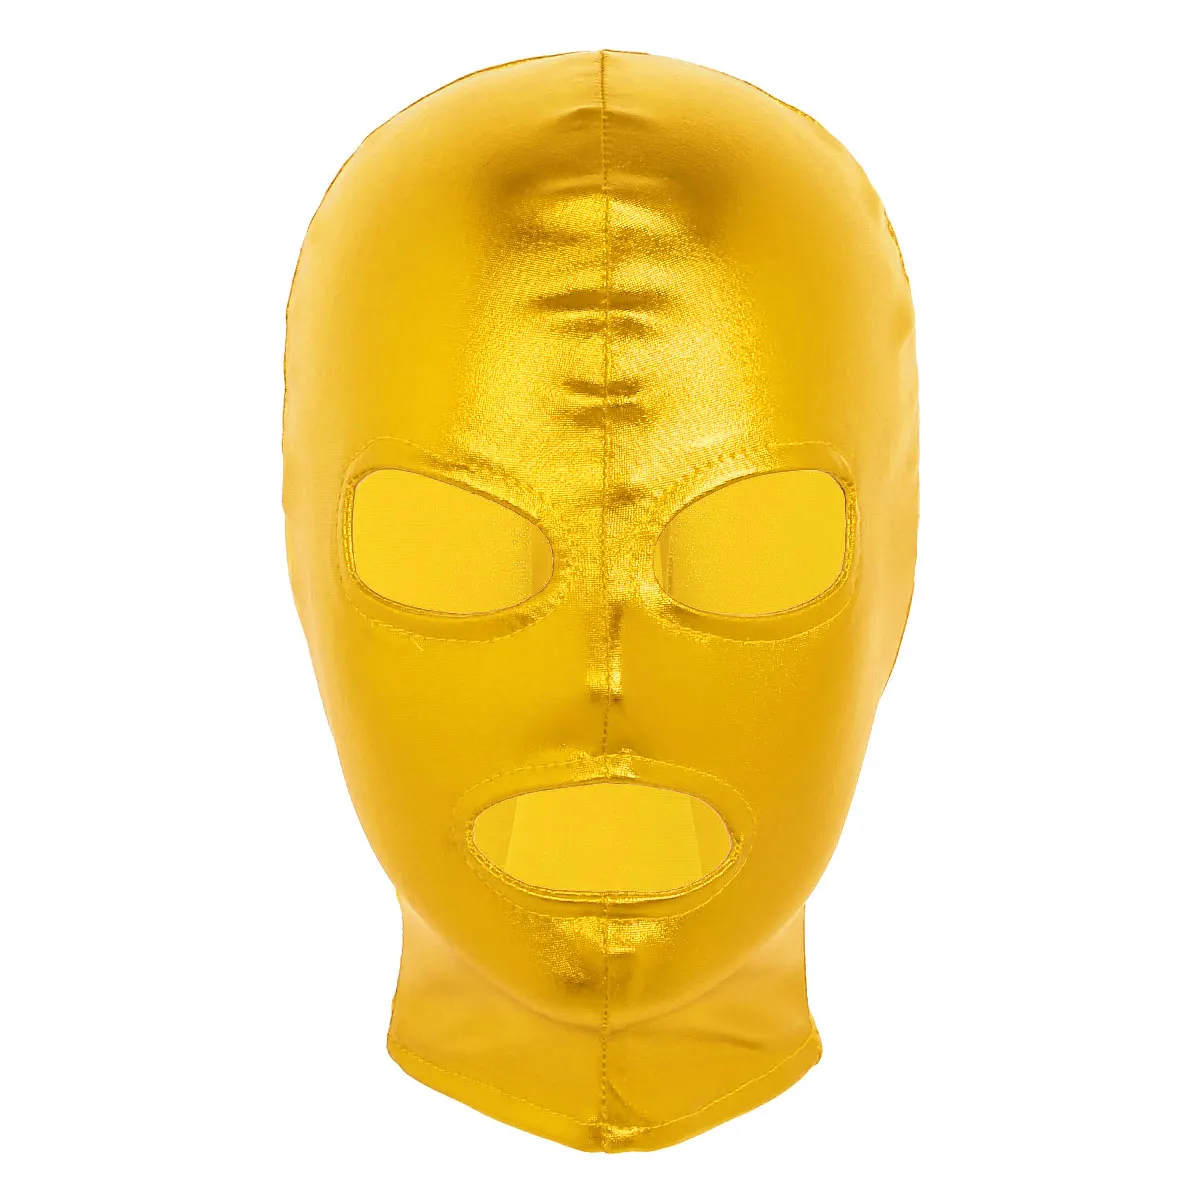 Унисекс для женщин и мужчин блестящая латексная маска для ролевых игр полный капюшон Головные уборы Ролевые Хэллоуин косплей костюм аксессуары - Цвет: Gold